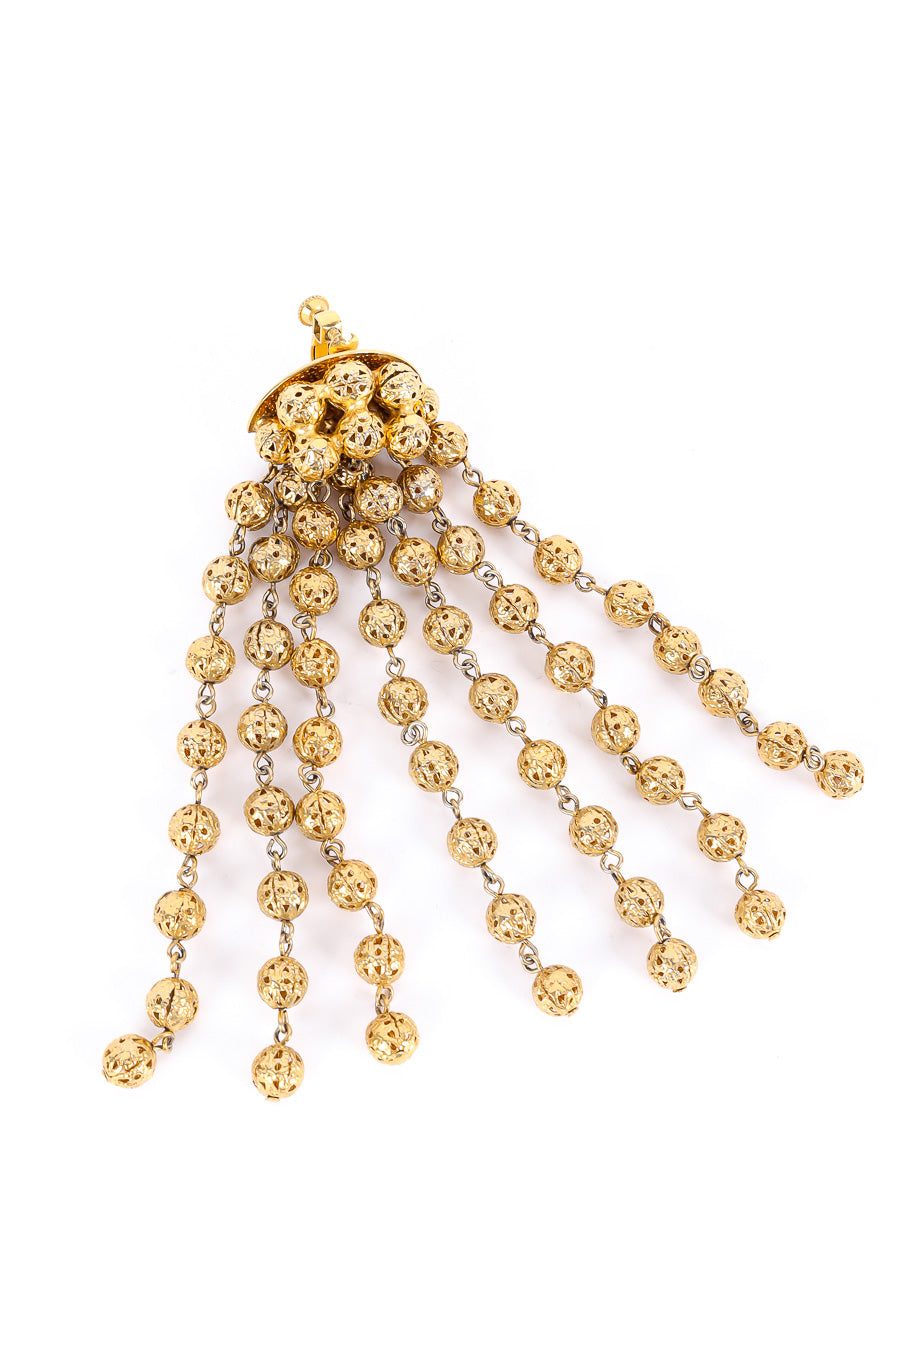 Long gold filigree ball shoulder duster drop earrings earrings strands photo. @recessla